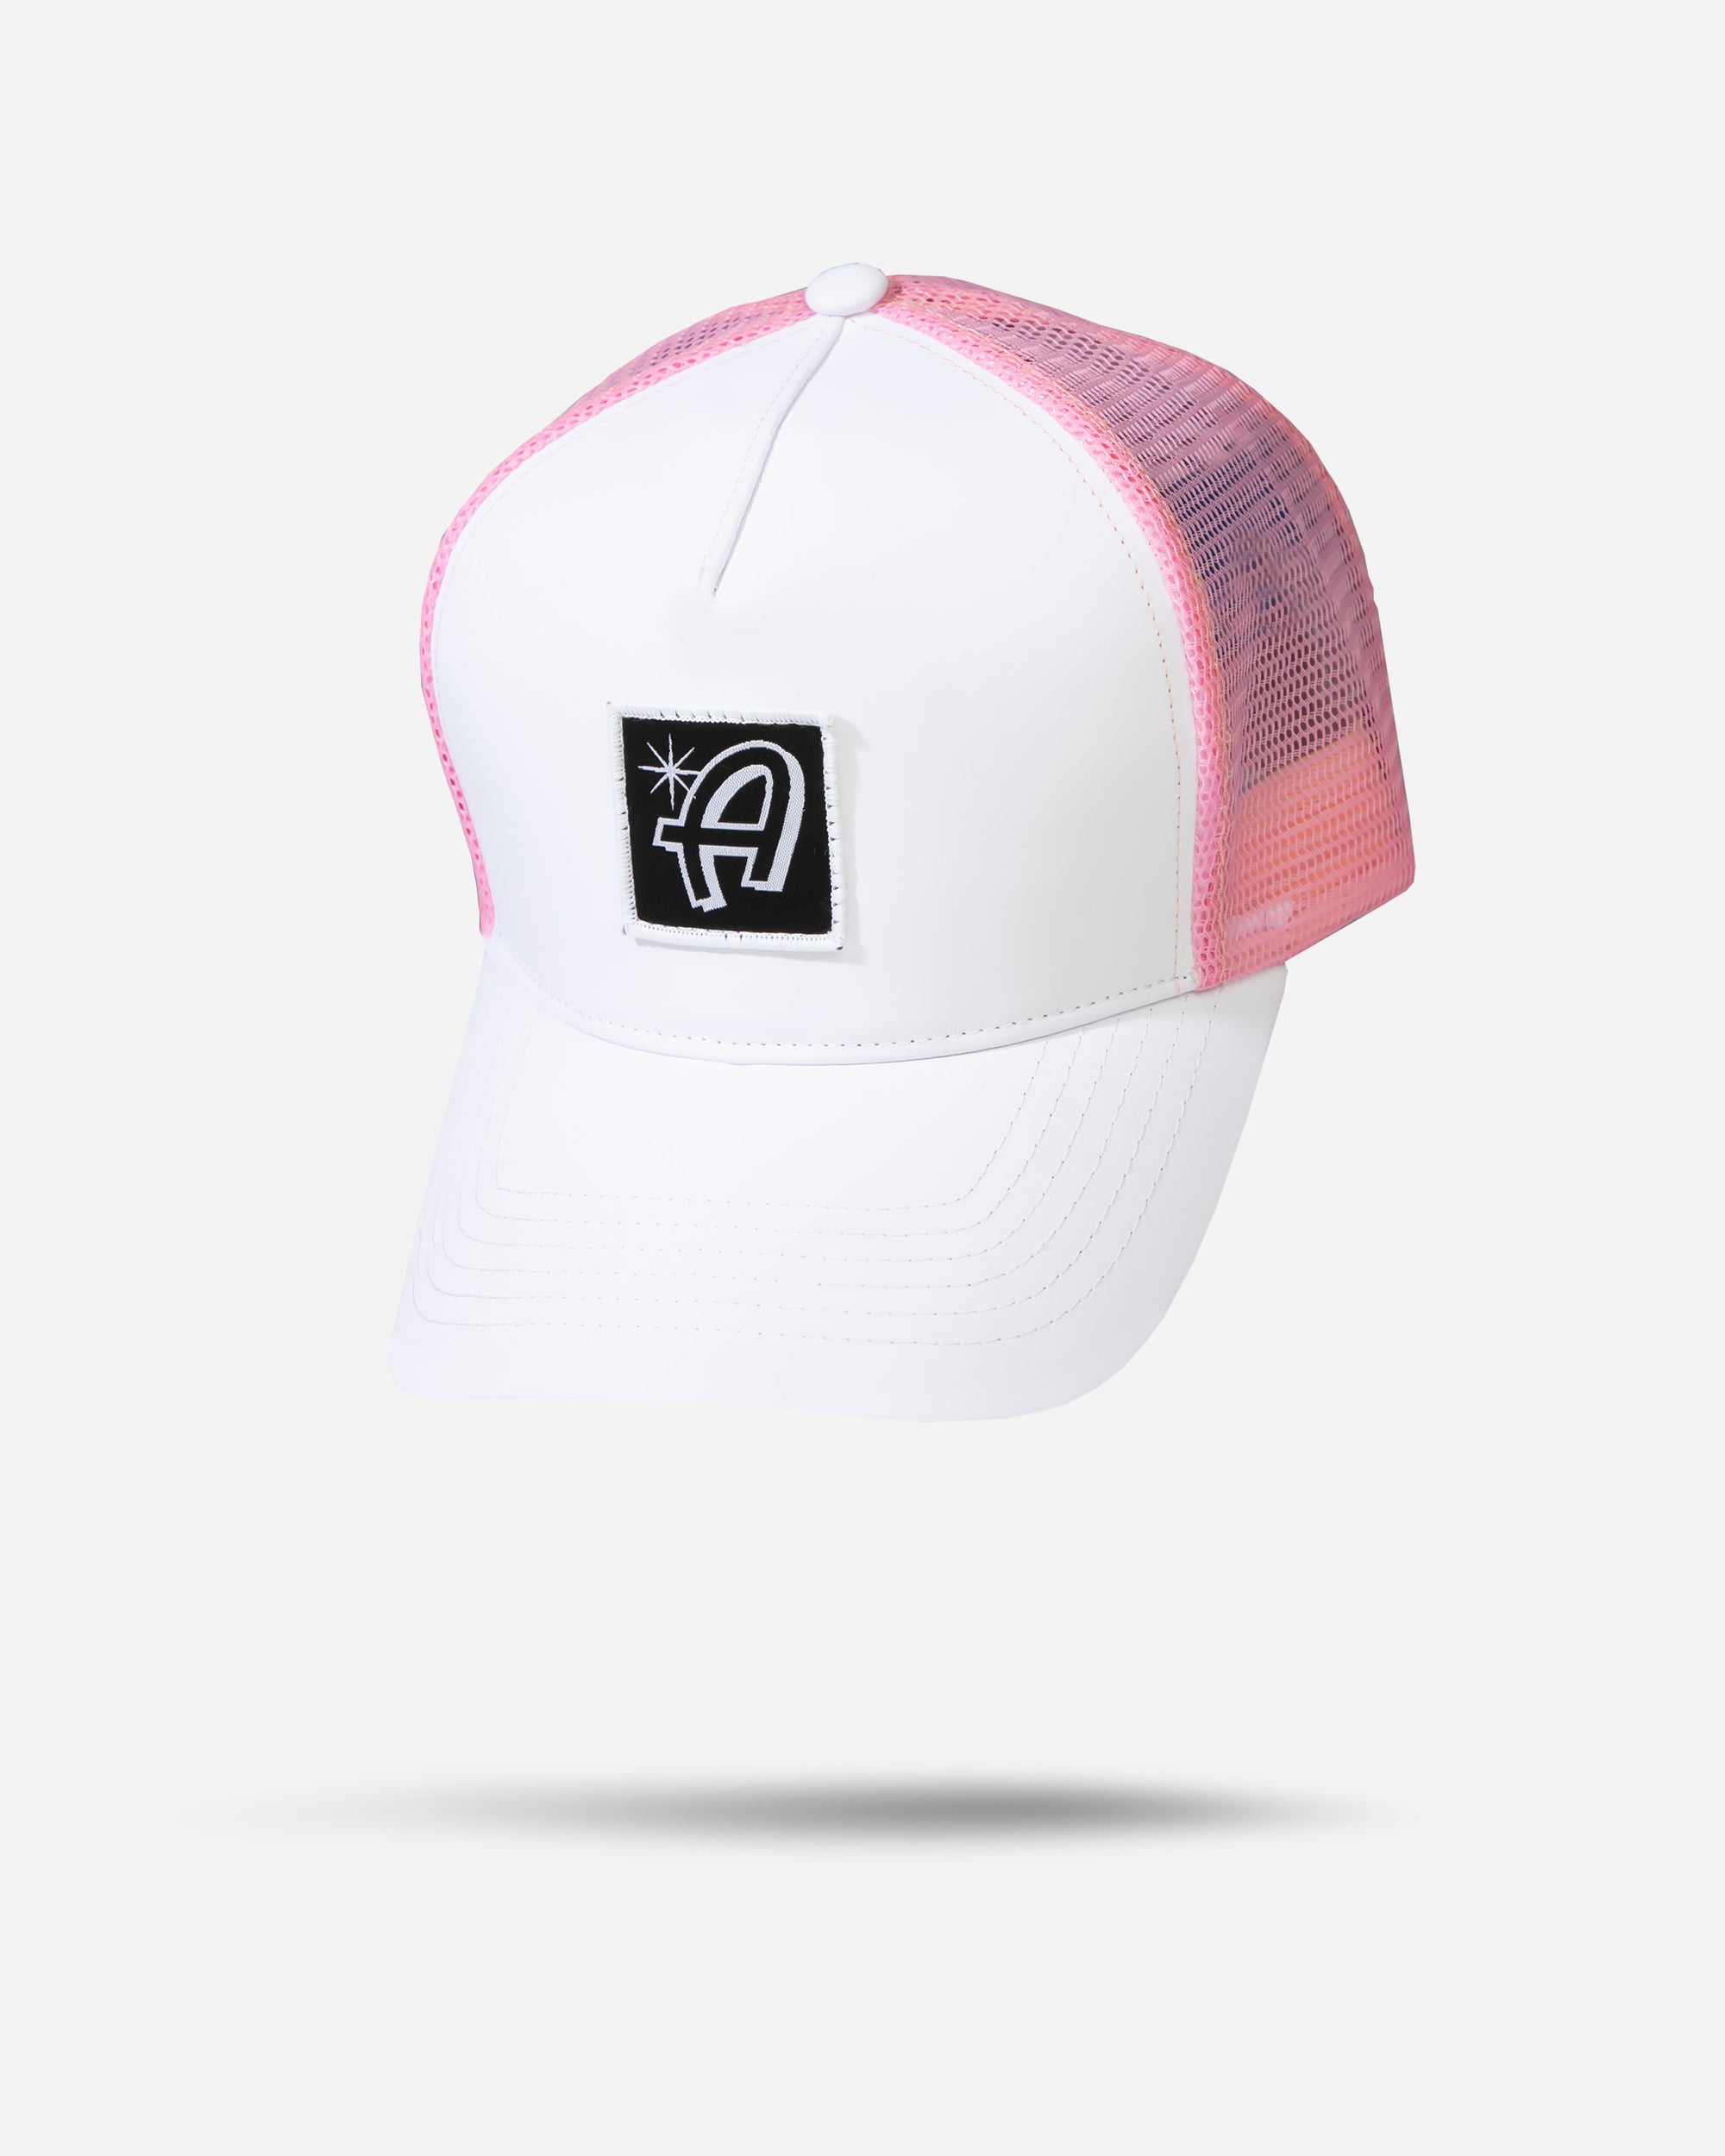 Adam's Pink Curved Trucker Hat